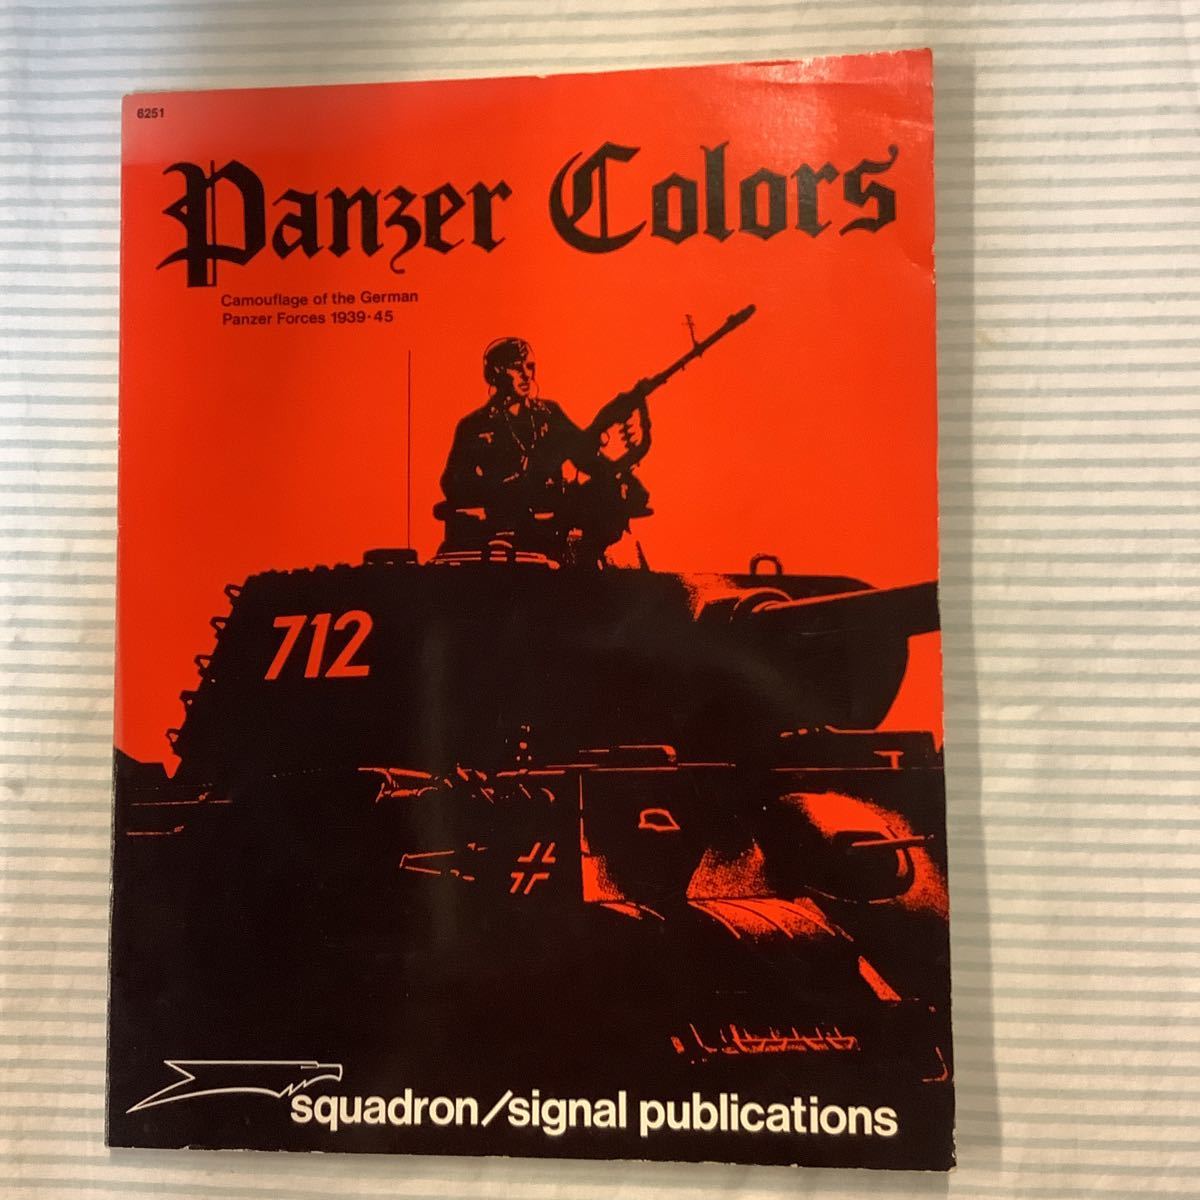 【洋書】ドイツ戦車のカモフラージュ Panzer Colors / Camouflage of the German Panzer Forces 1939-45の画像1